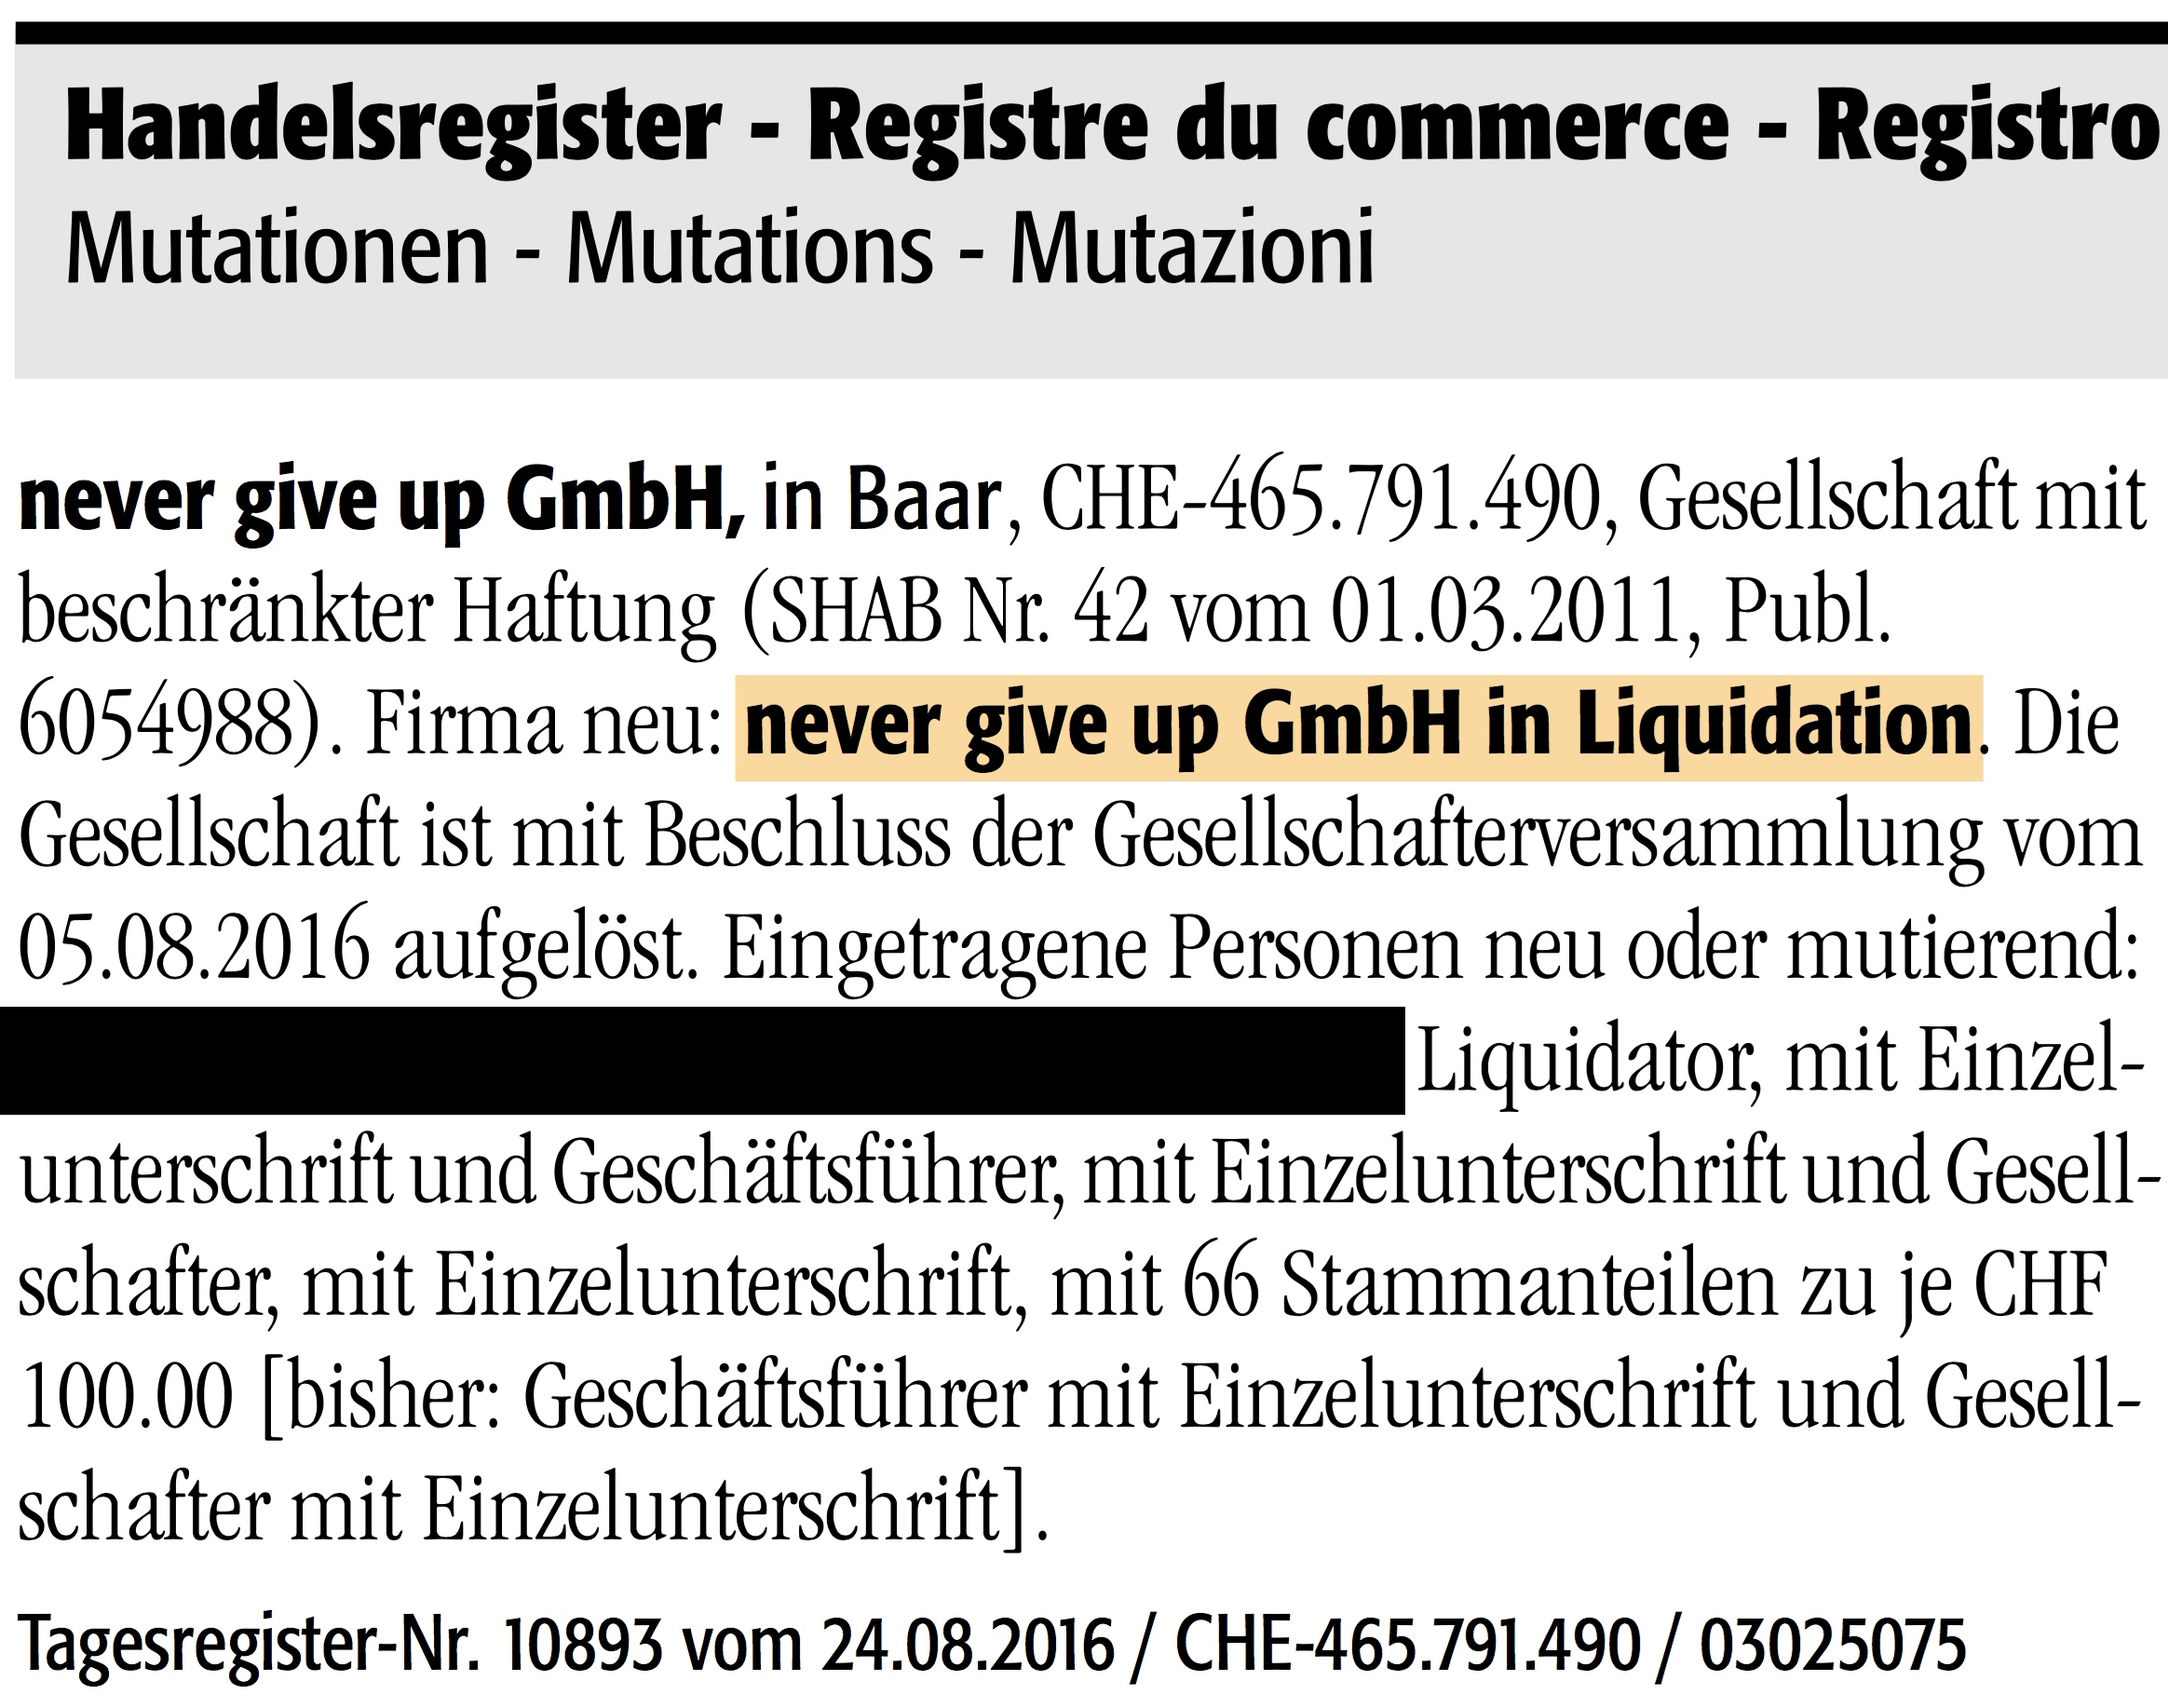 Auszug: Schweizerisches Handelsamtsblatt (SHAB), «never give up GmbH in Liquidation»